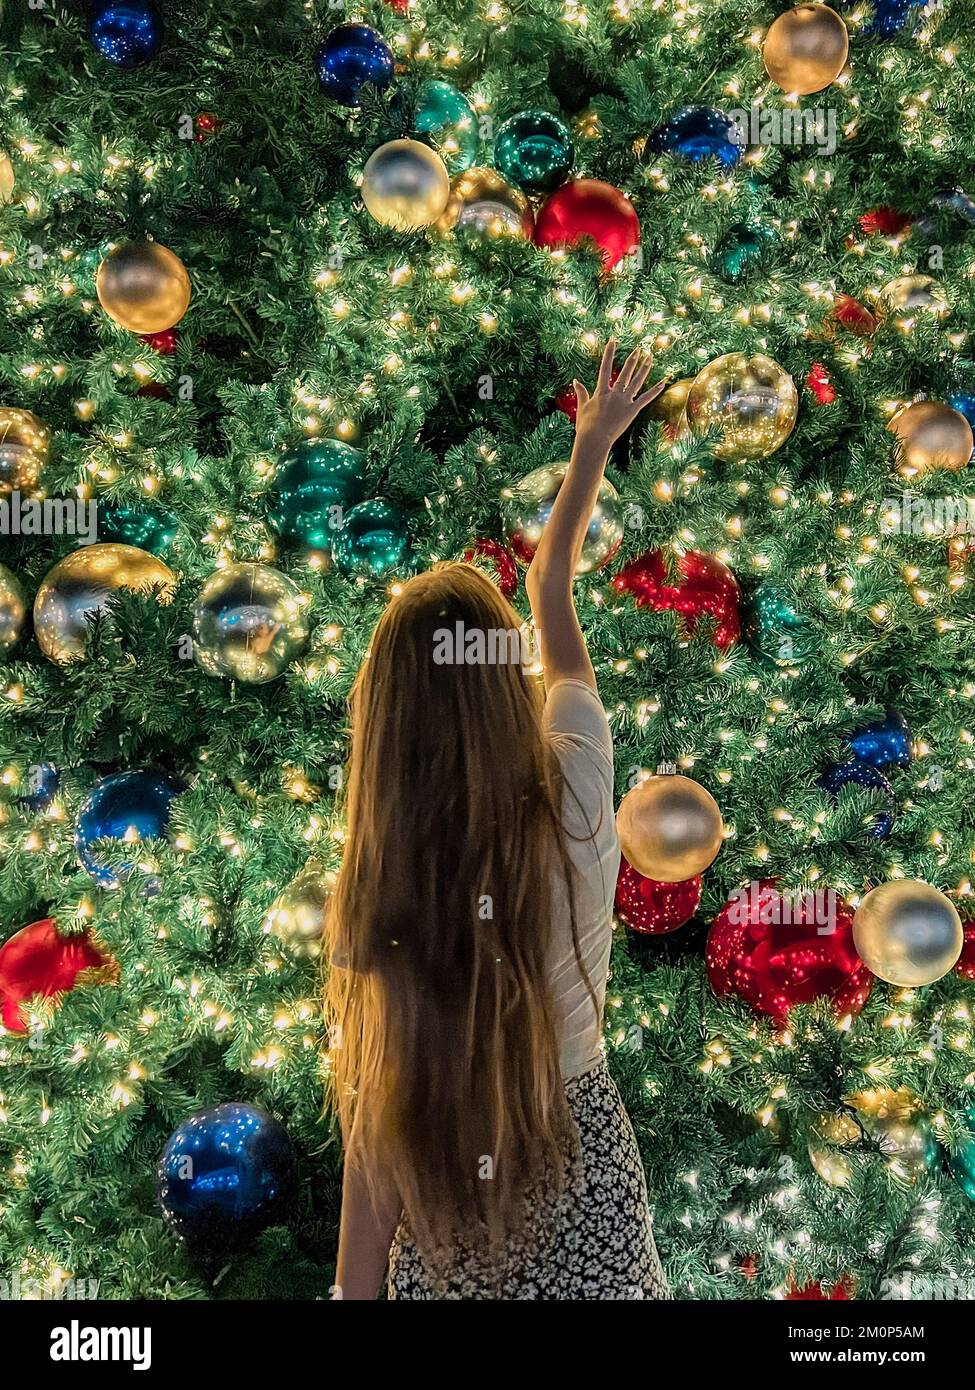 Ein junges Mädchen im Hintergrund des Weihnachtsbaums in Miami. Wunderschöner Weihnachtsbaum in der beliebten Gegend an Weihnachten und Lichtern Stockfoto